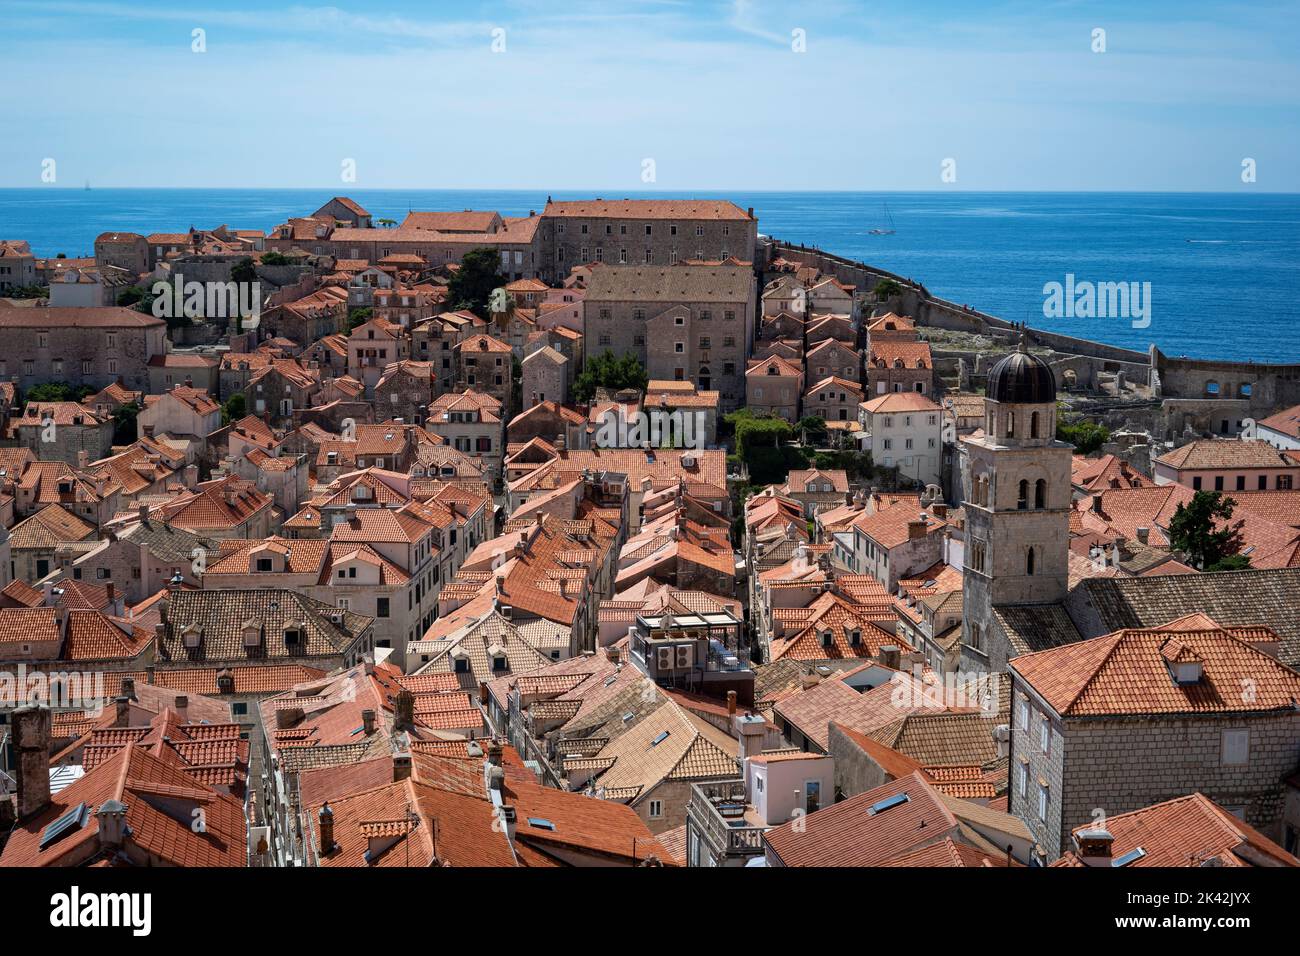 Vue sur les toits de la vieille ville de Dubrovnik et la mer depuis le mur de la ville Banque D'Images